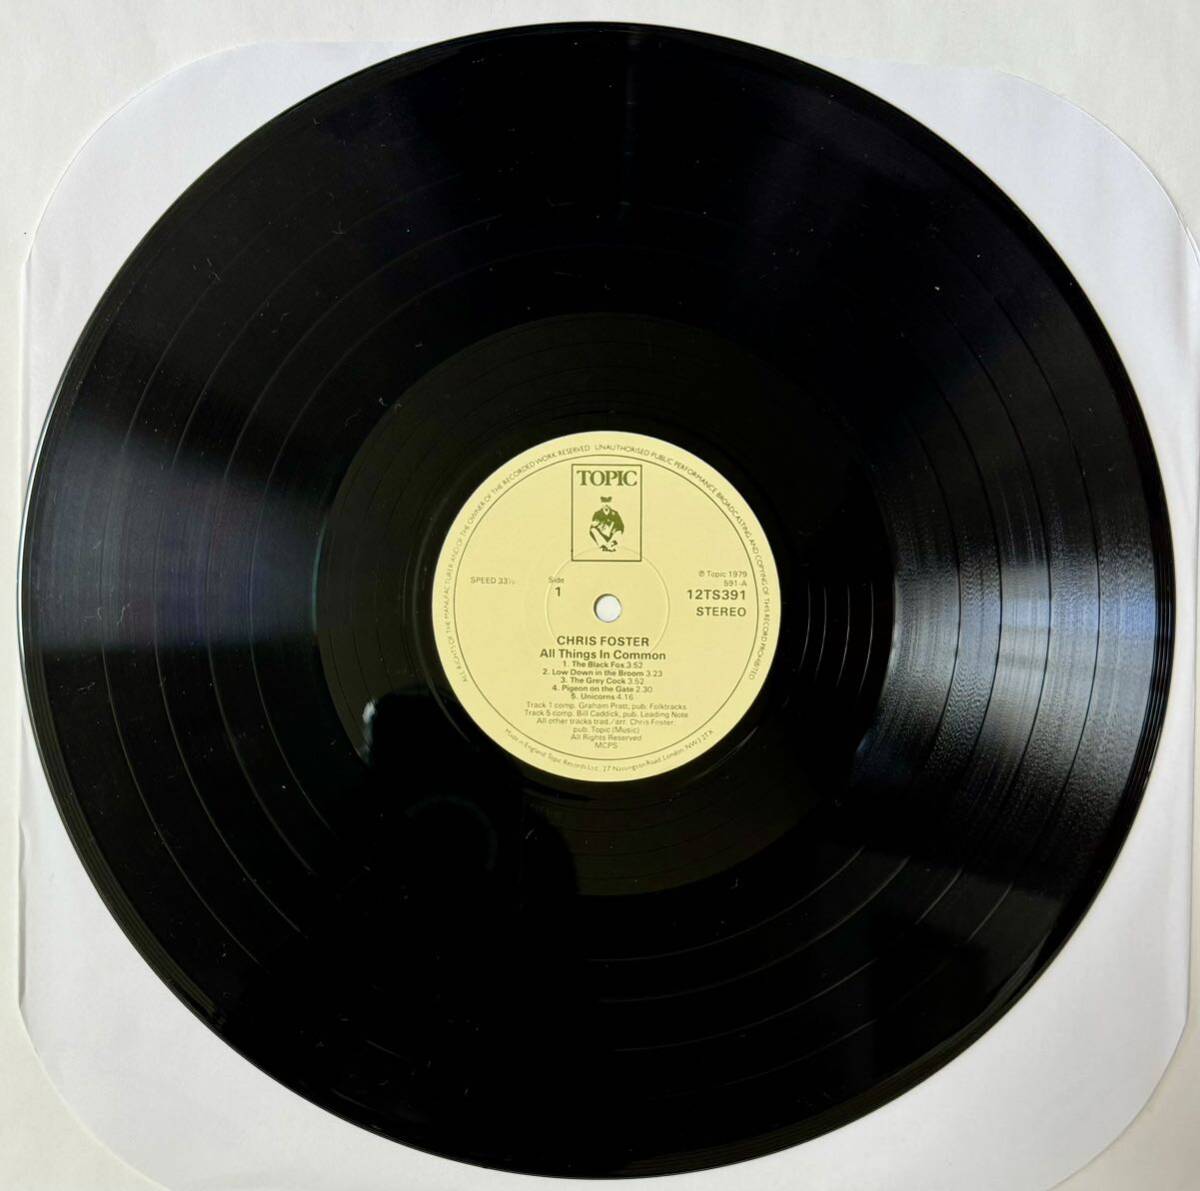 Chris Foster All Things In Common (1979) / UKフォーク / 英国フォーク / トラッド / プログレ/ FOLK / ROCK / UK オリジナル _画像3